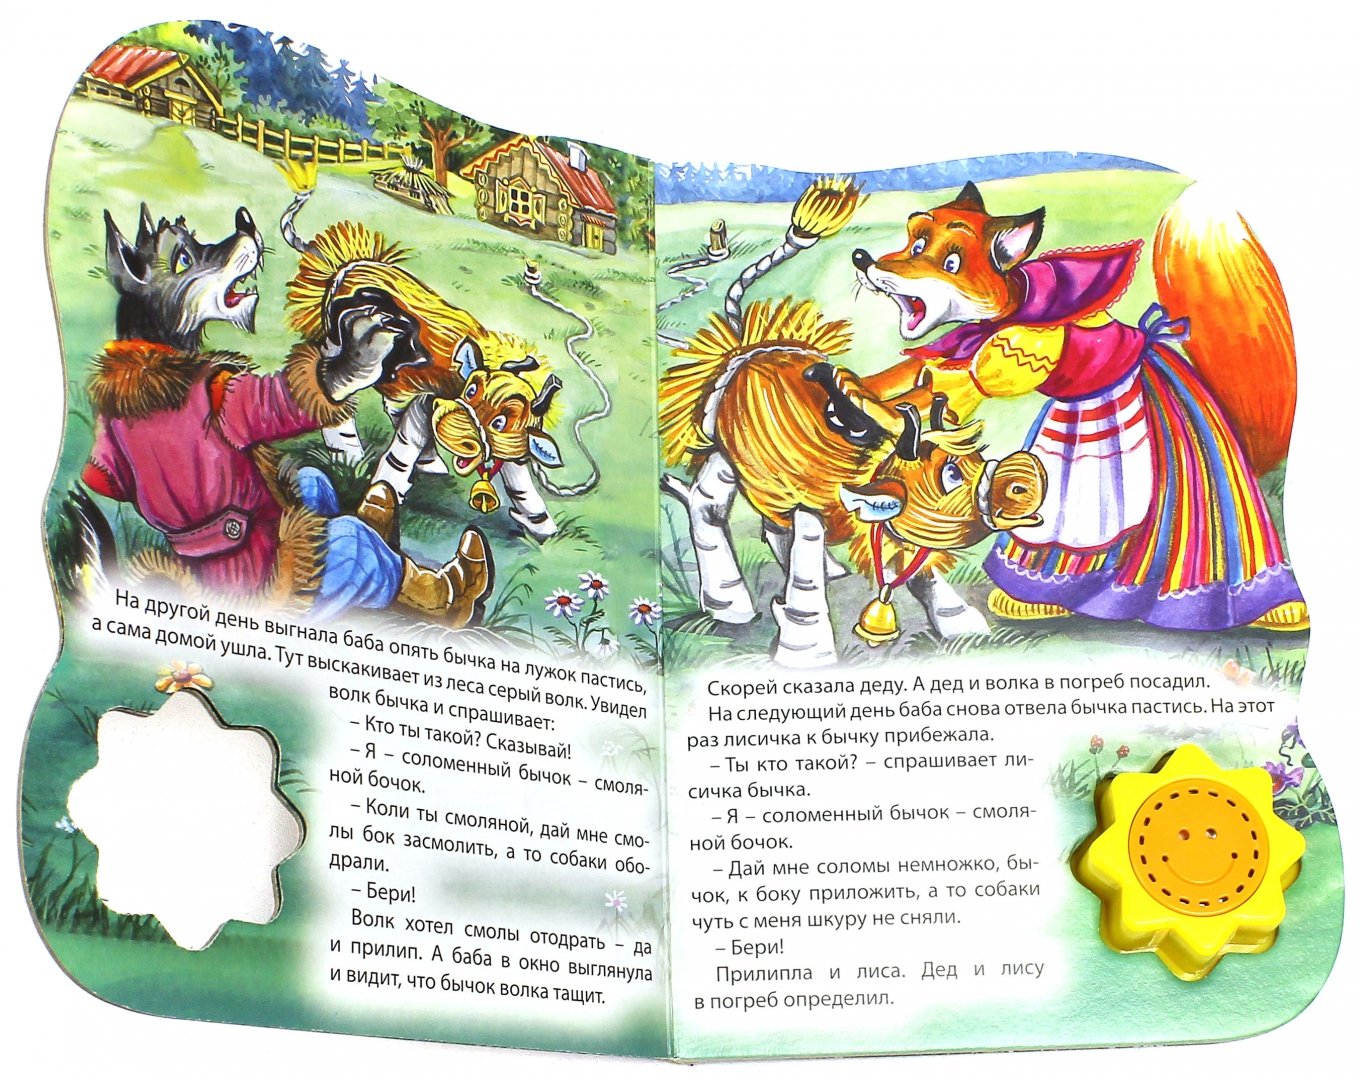 Иллюстрация 1 из 4 для Соломенный бычок - смоляной бочок | Лабиринт - книги. Источник: Лабиринт